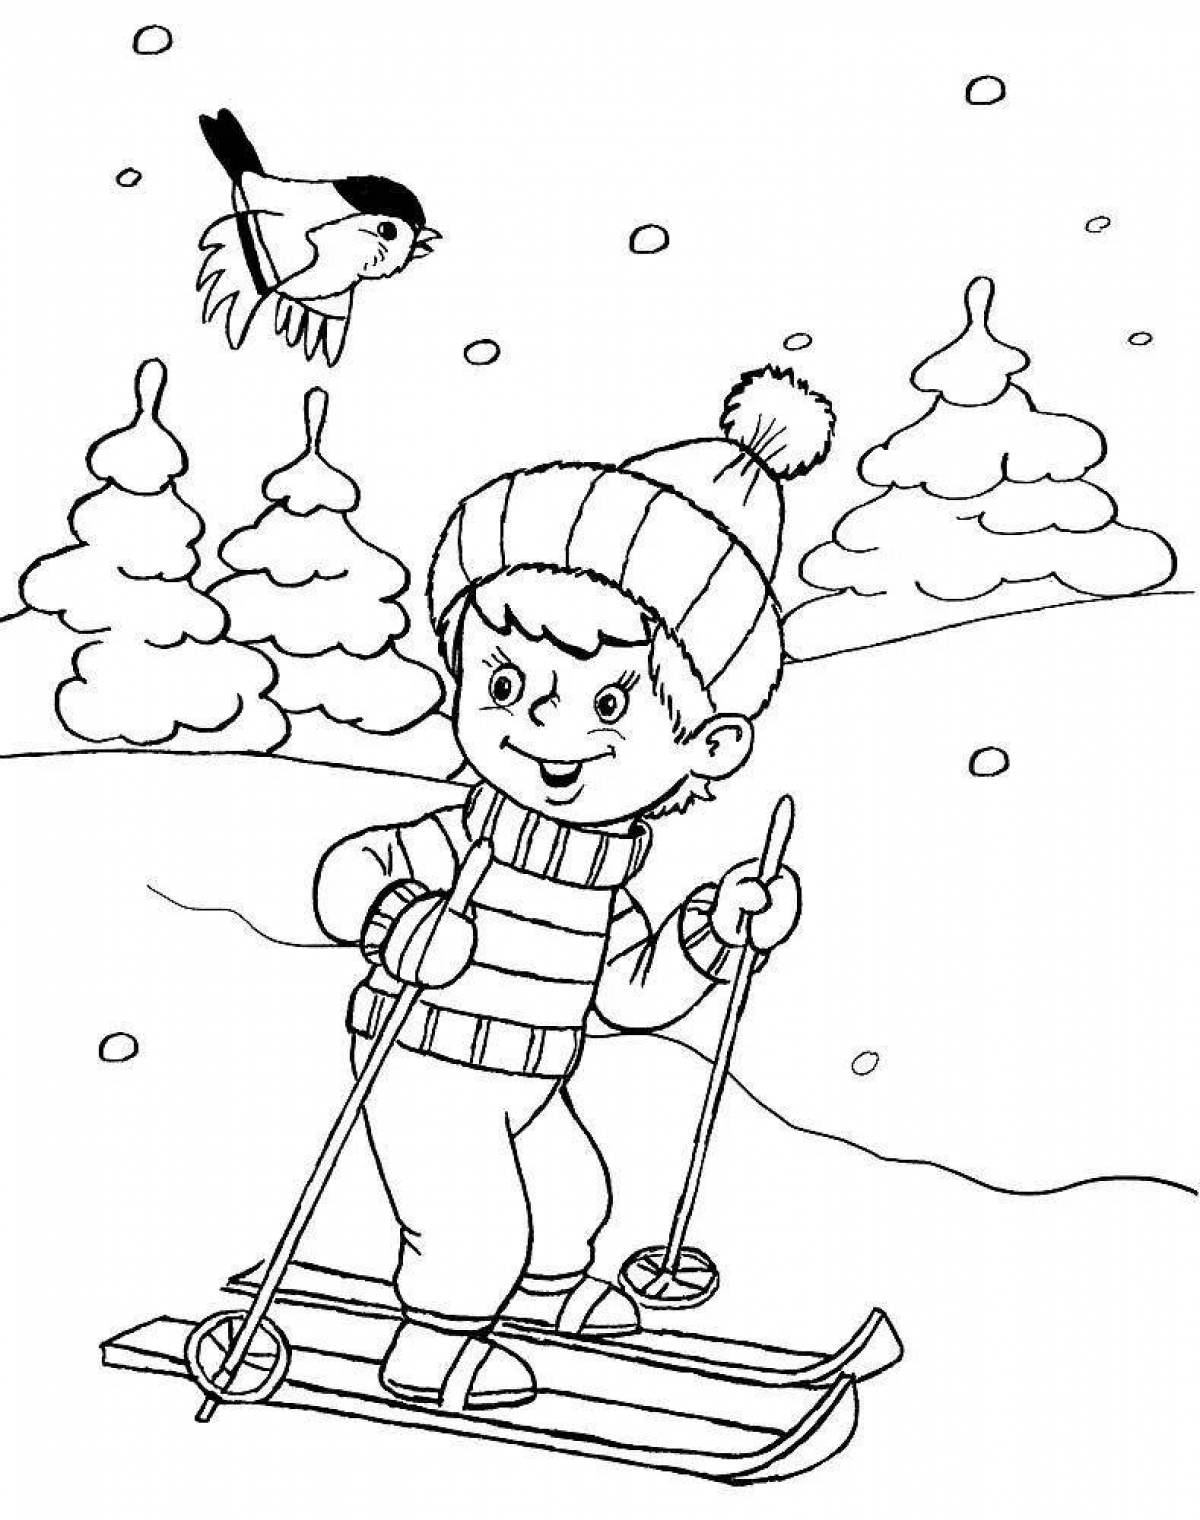 Adventure winter activities for people